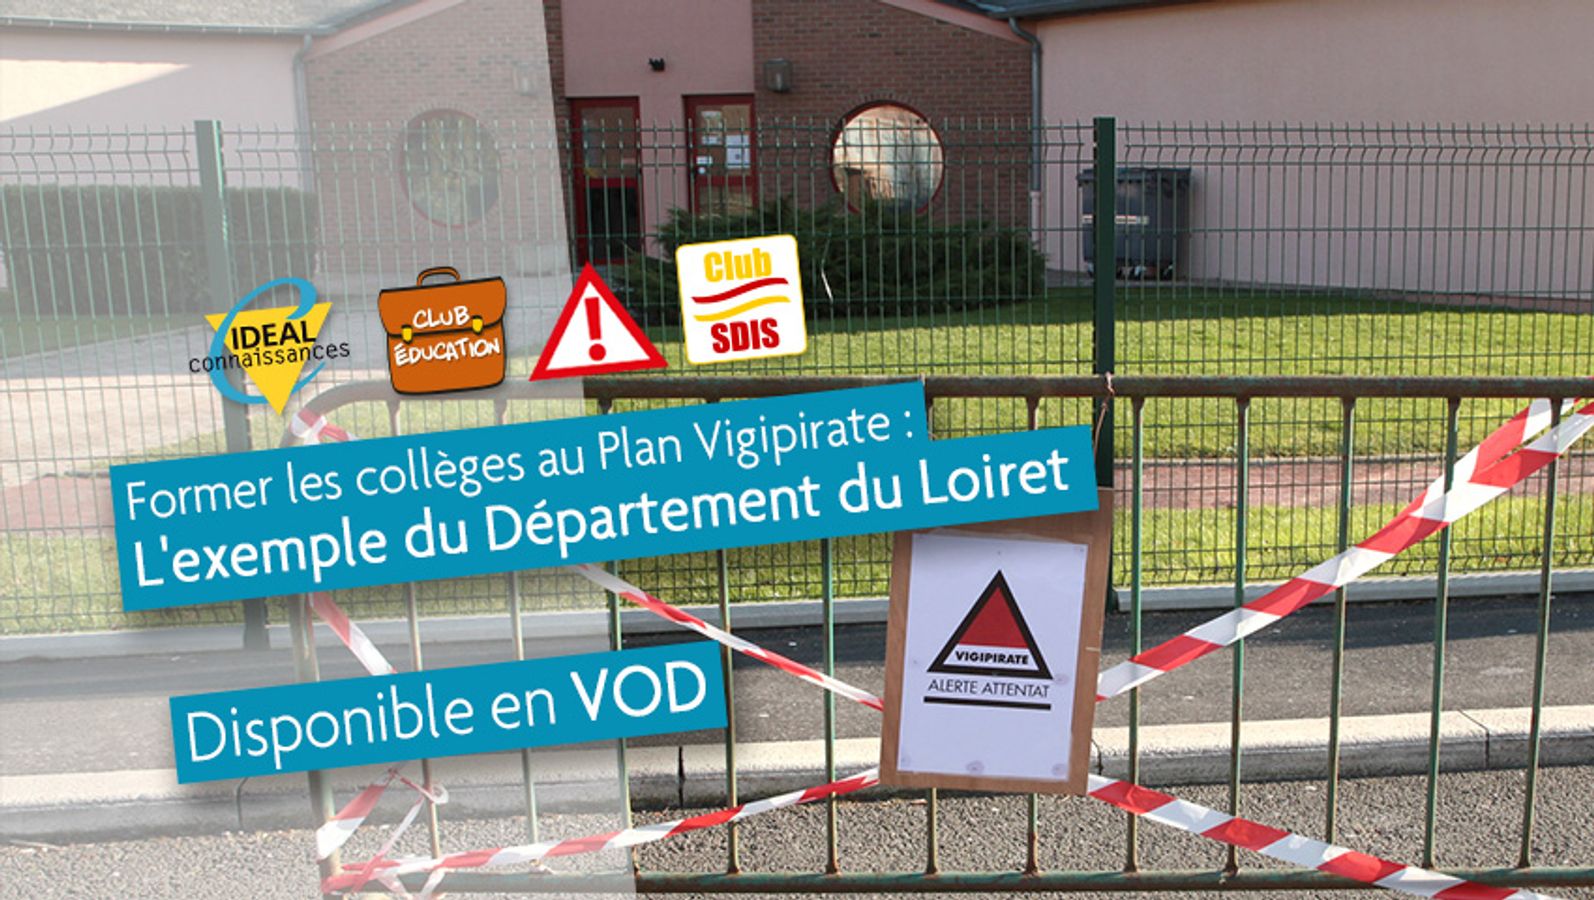 Le Département du Loiret forme ses collèges au Plan Vigipirate